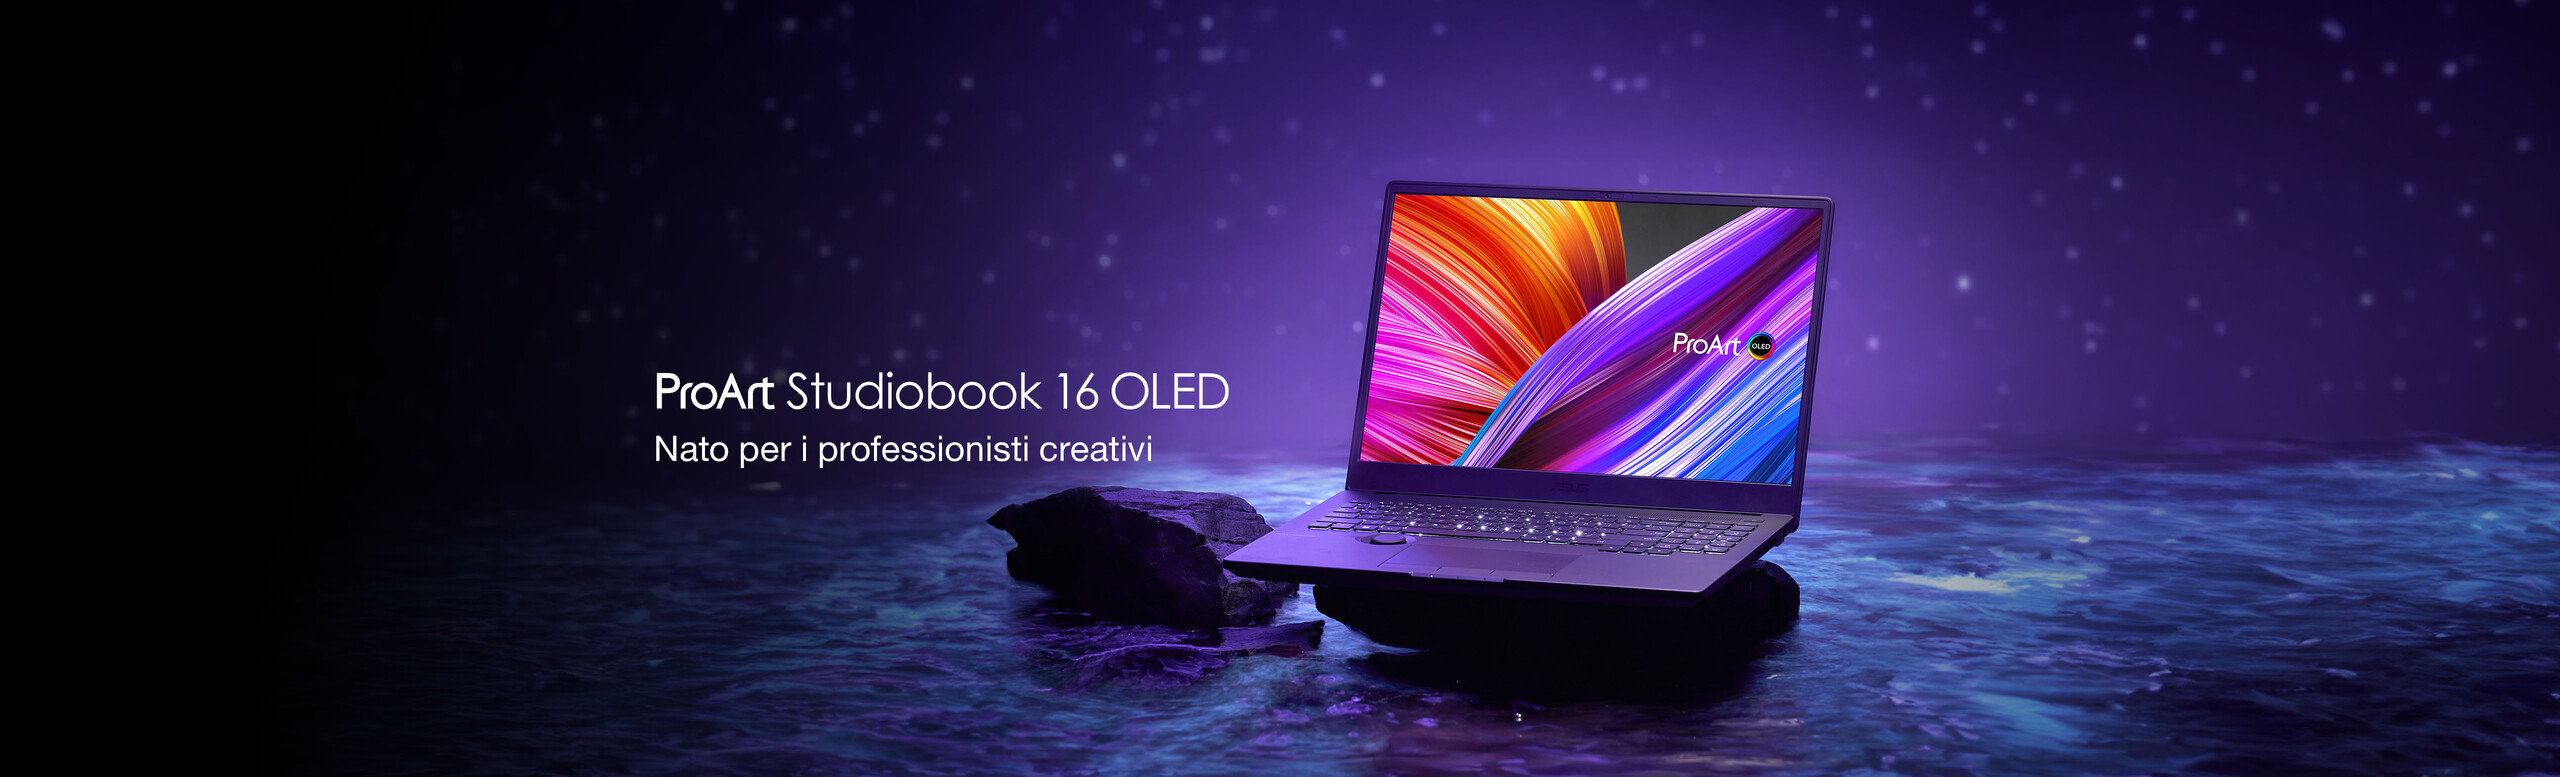 ProArt Studiobook Pro 16 OLED (W7600, 12th Gen Intel)